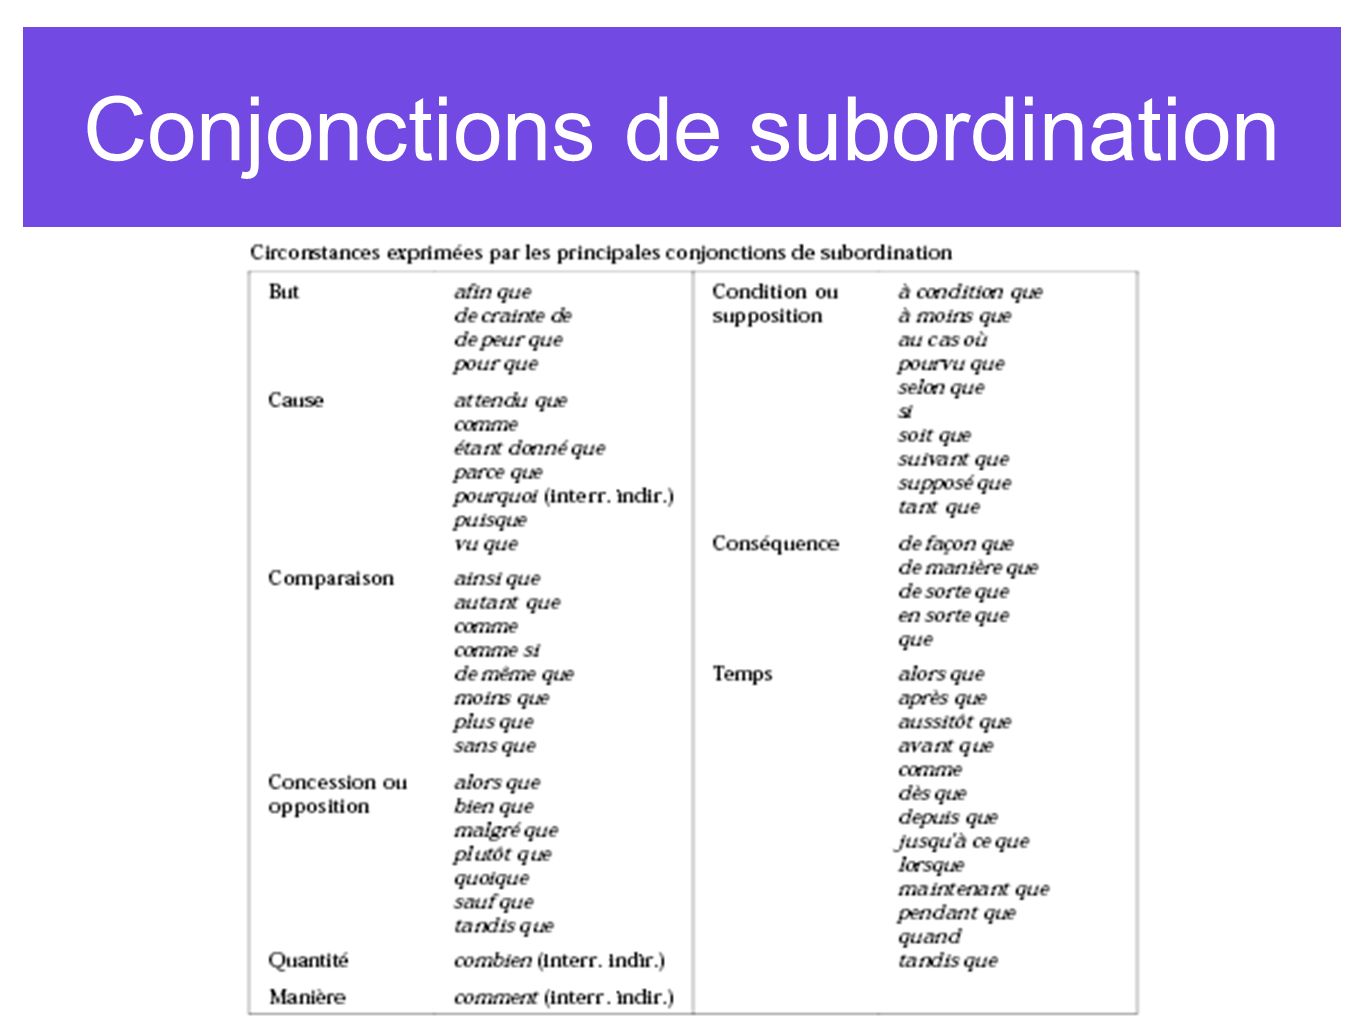 Conjonctions de subordination